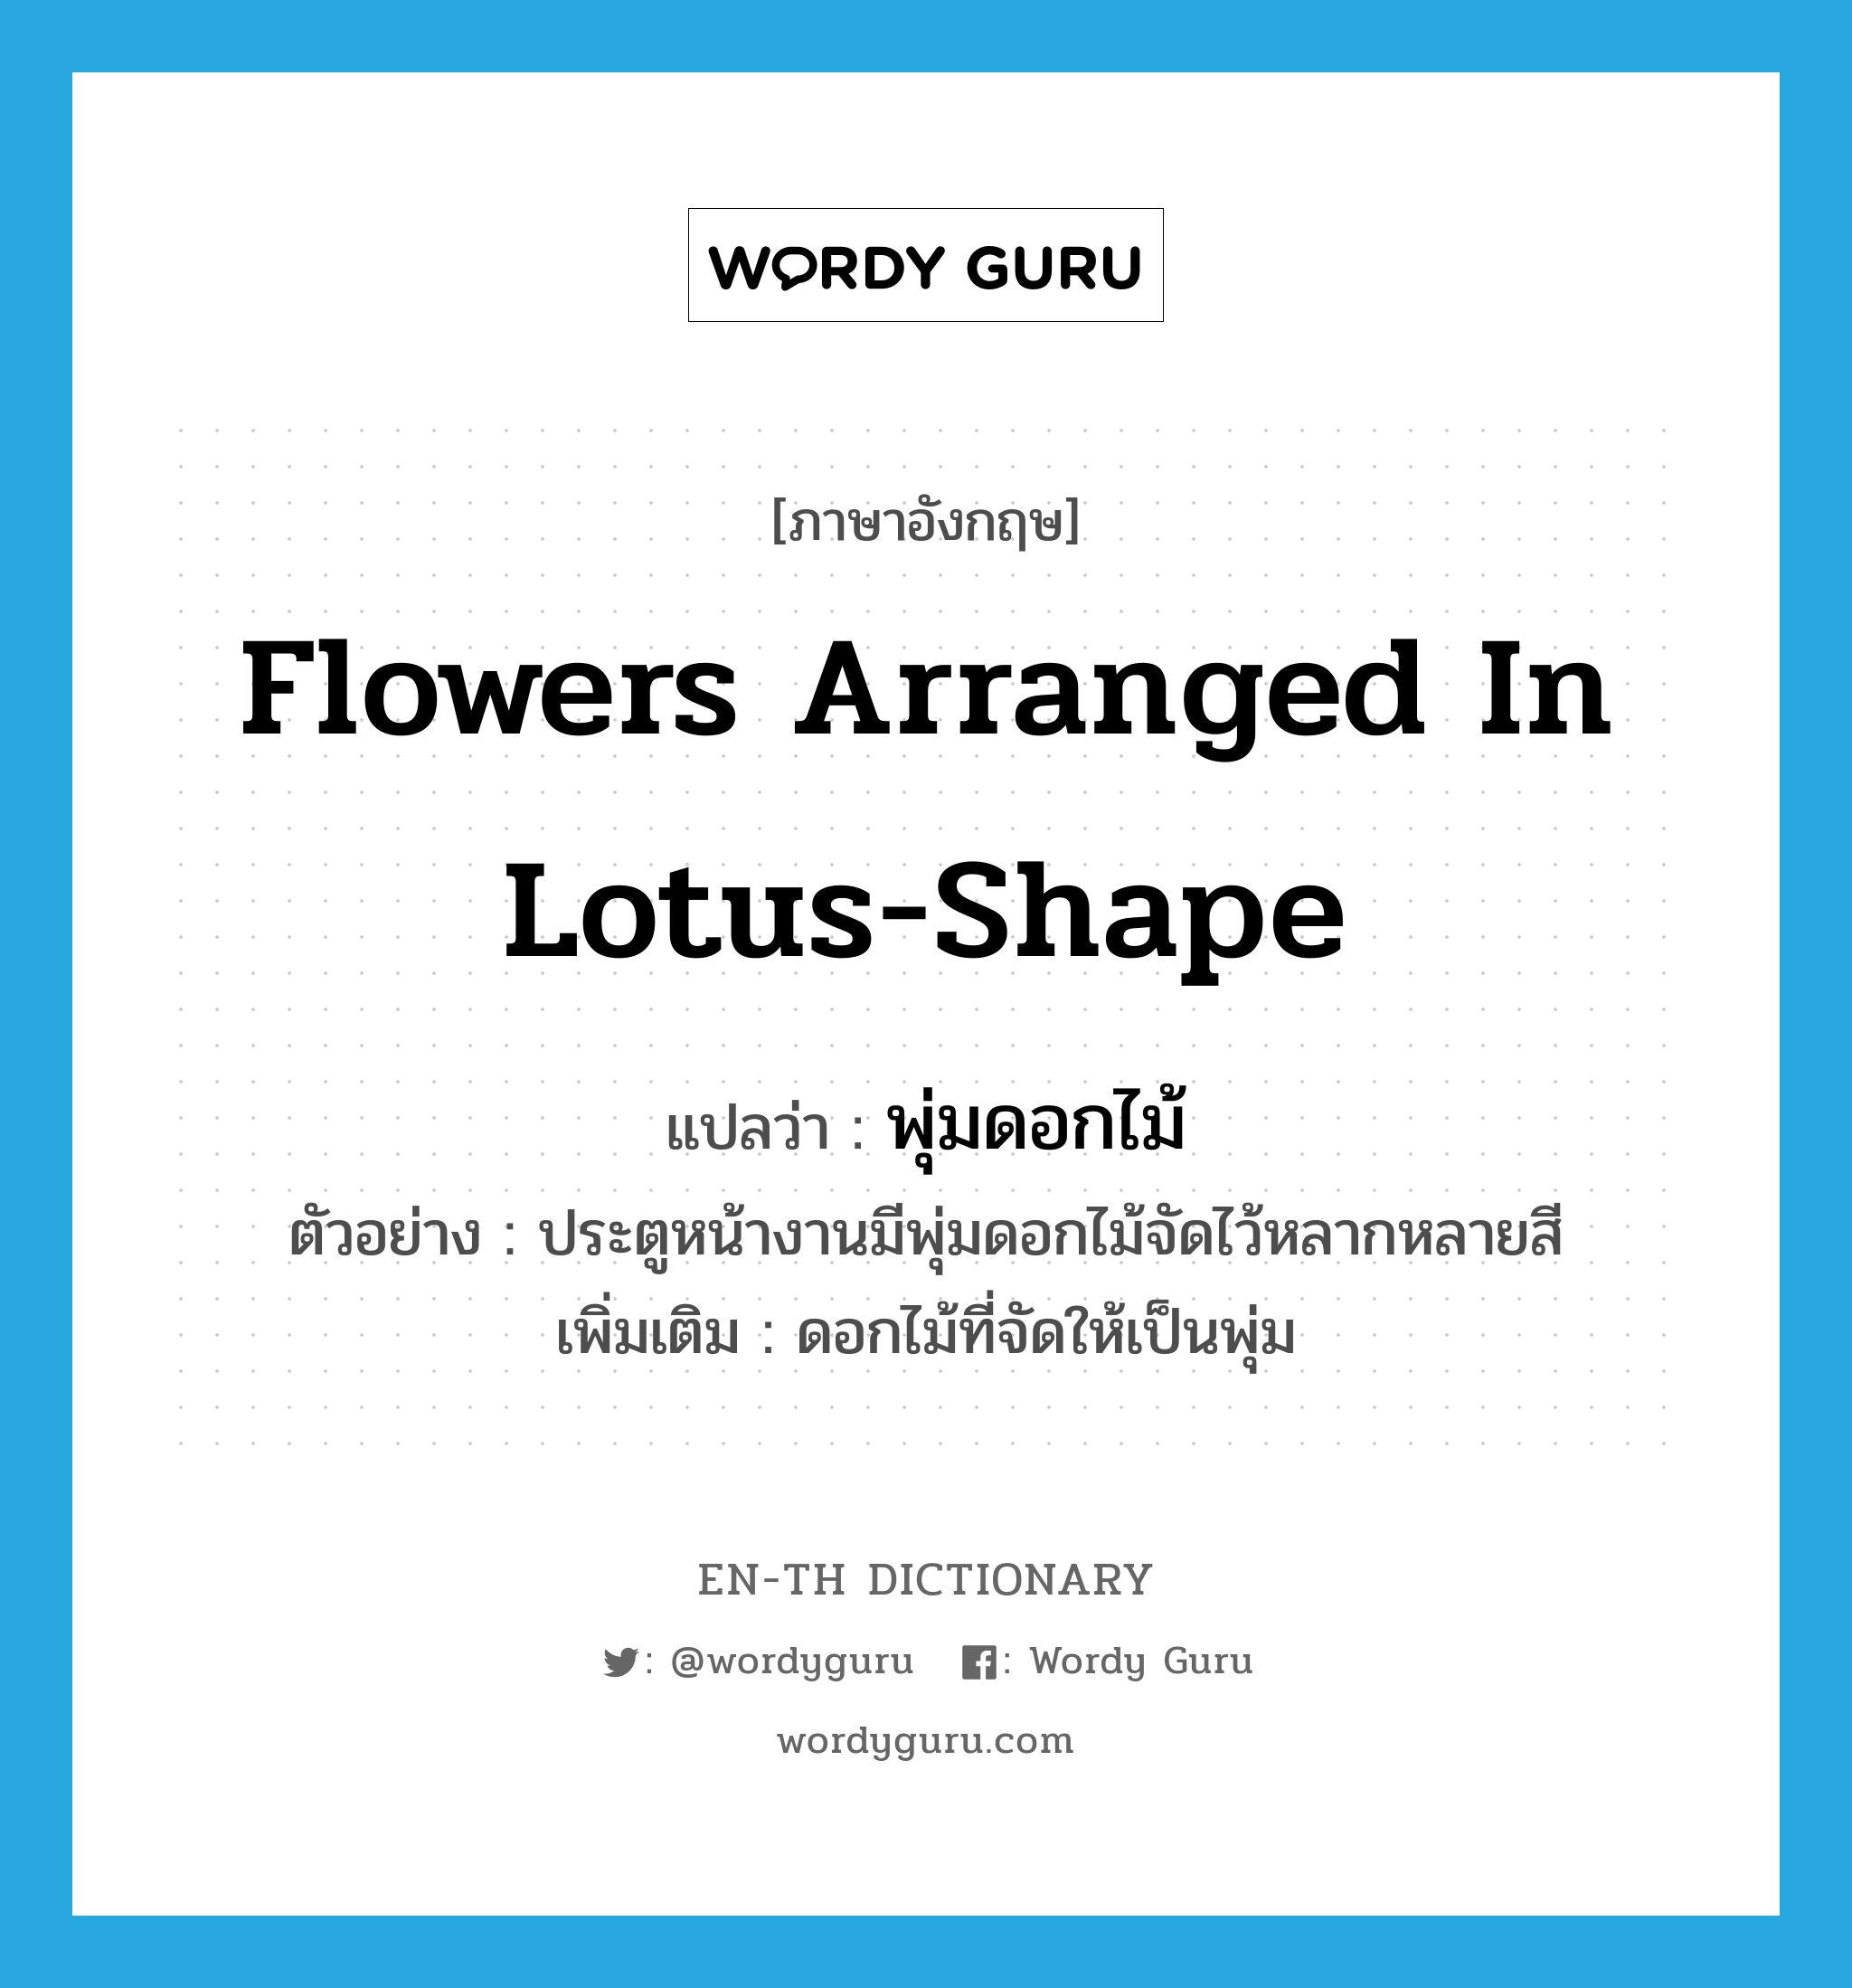 พุ่มดอกไม้ ภาษาอังกฤษ?, คำศัพท์ภาษาอังกฤษ พุ่มดอกไม้ แปลว่า flowers arranged in lotus-shape ประเภท N ตัวอย่าง ประตูหน้างานมีพุ่มดอกไม้จัดไว้หลากหลายสี เพิ่มเติม ดอกไม้ที่จัดให้เป็นพุ่ม หมวด N